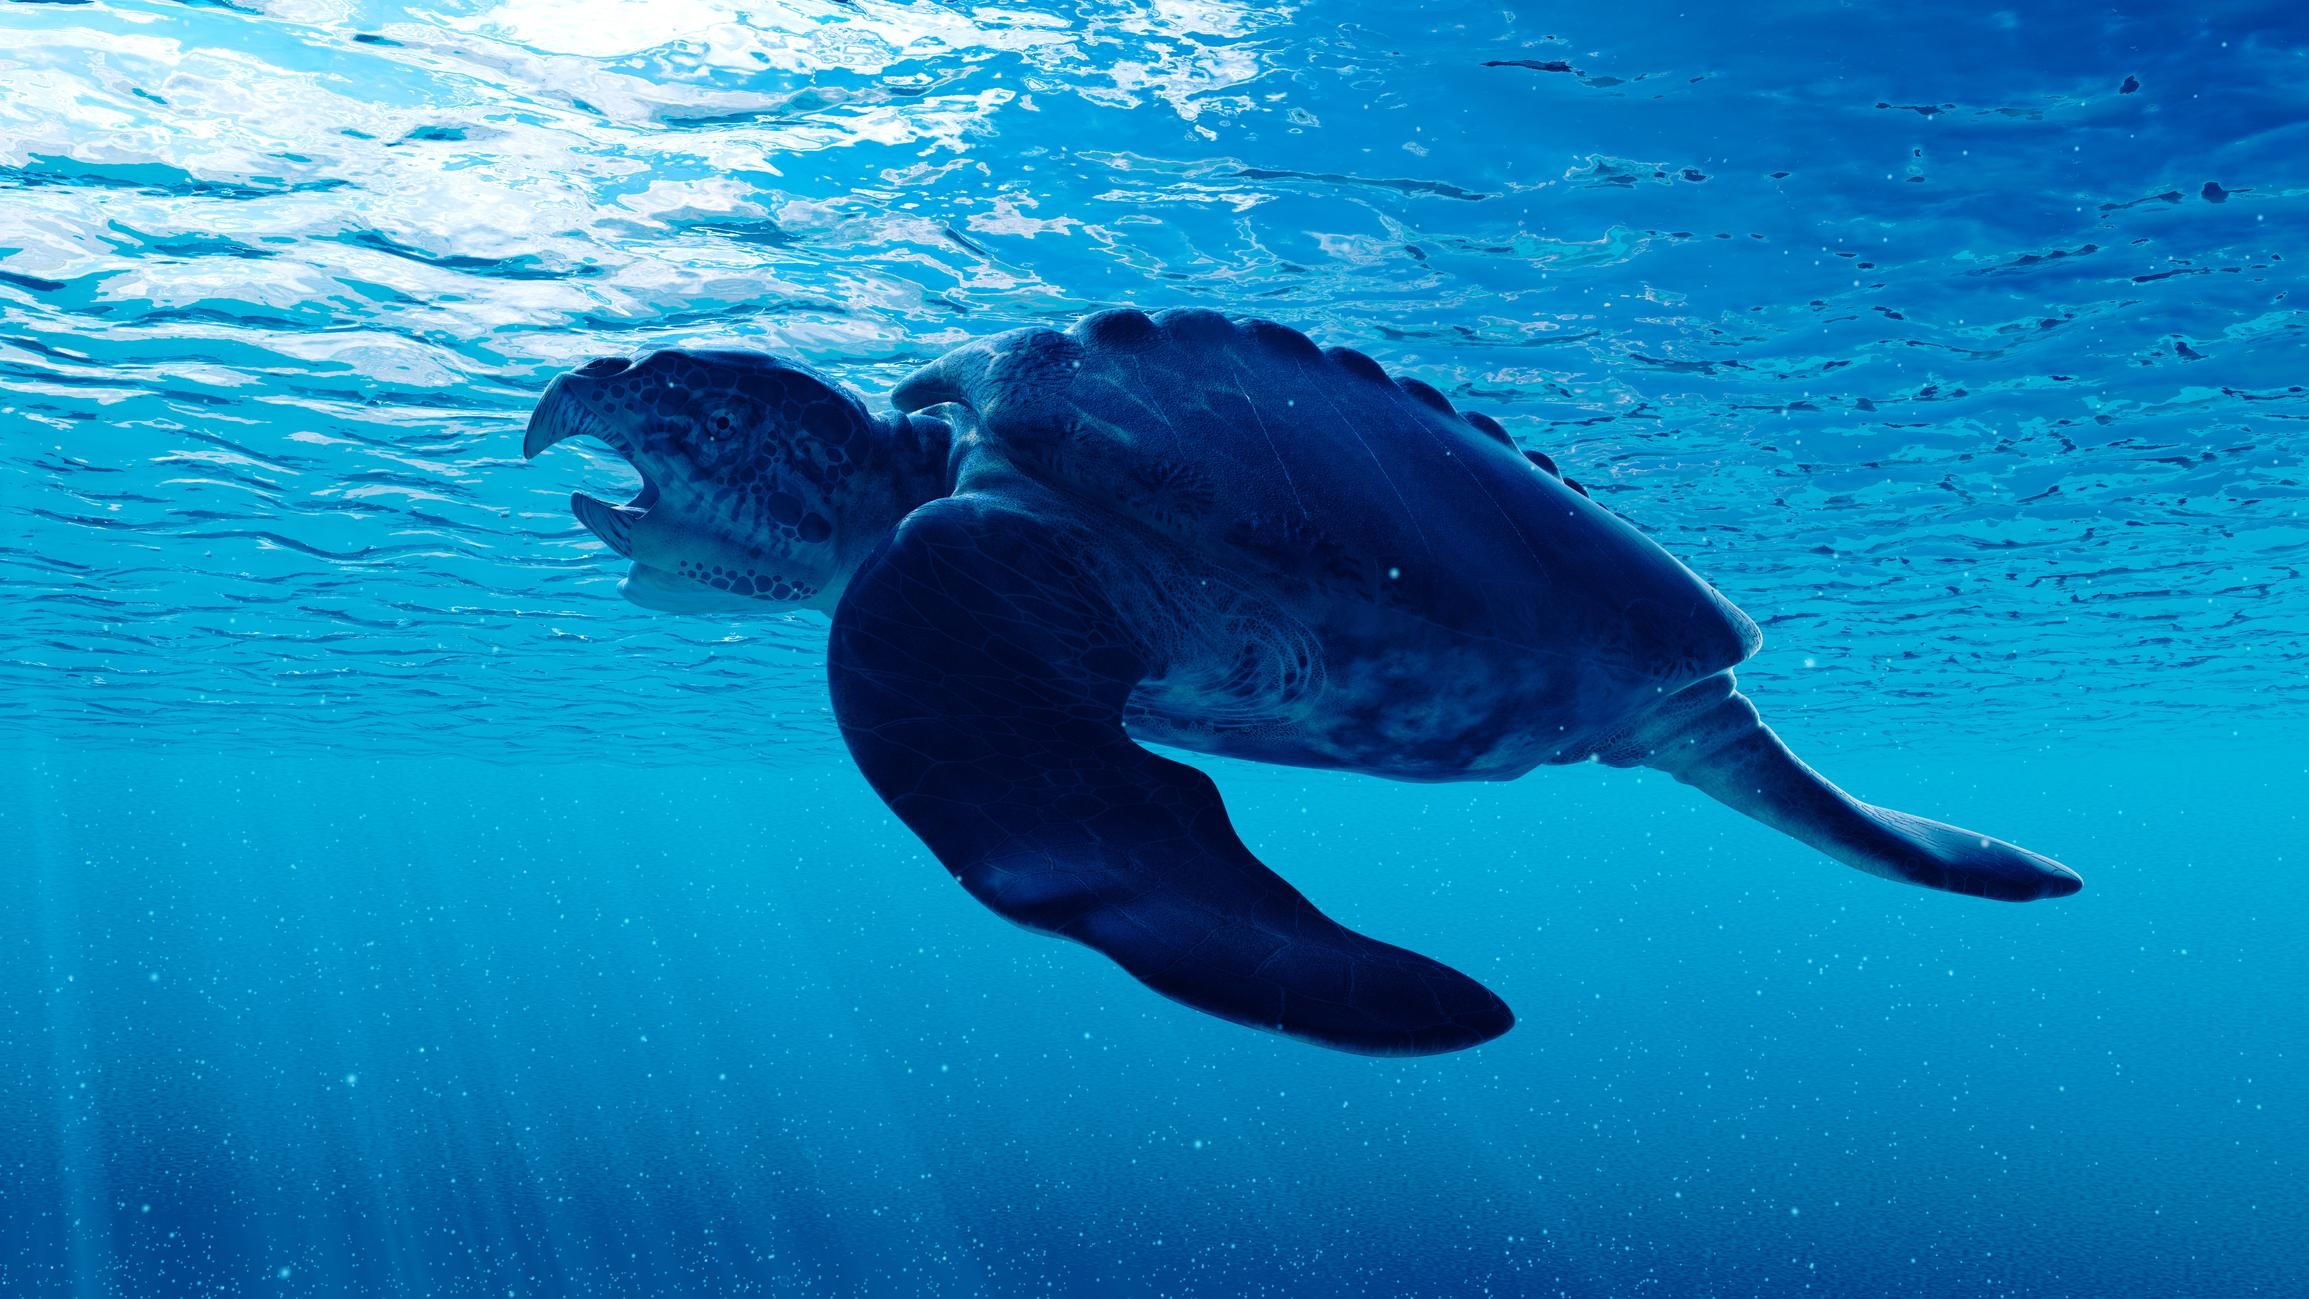 teknős fajta archelon a tengerben óceánban vízben úszik